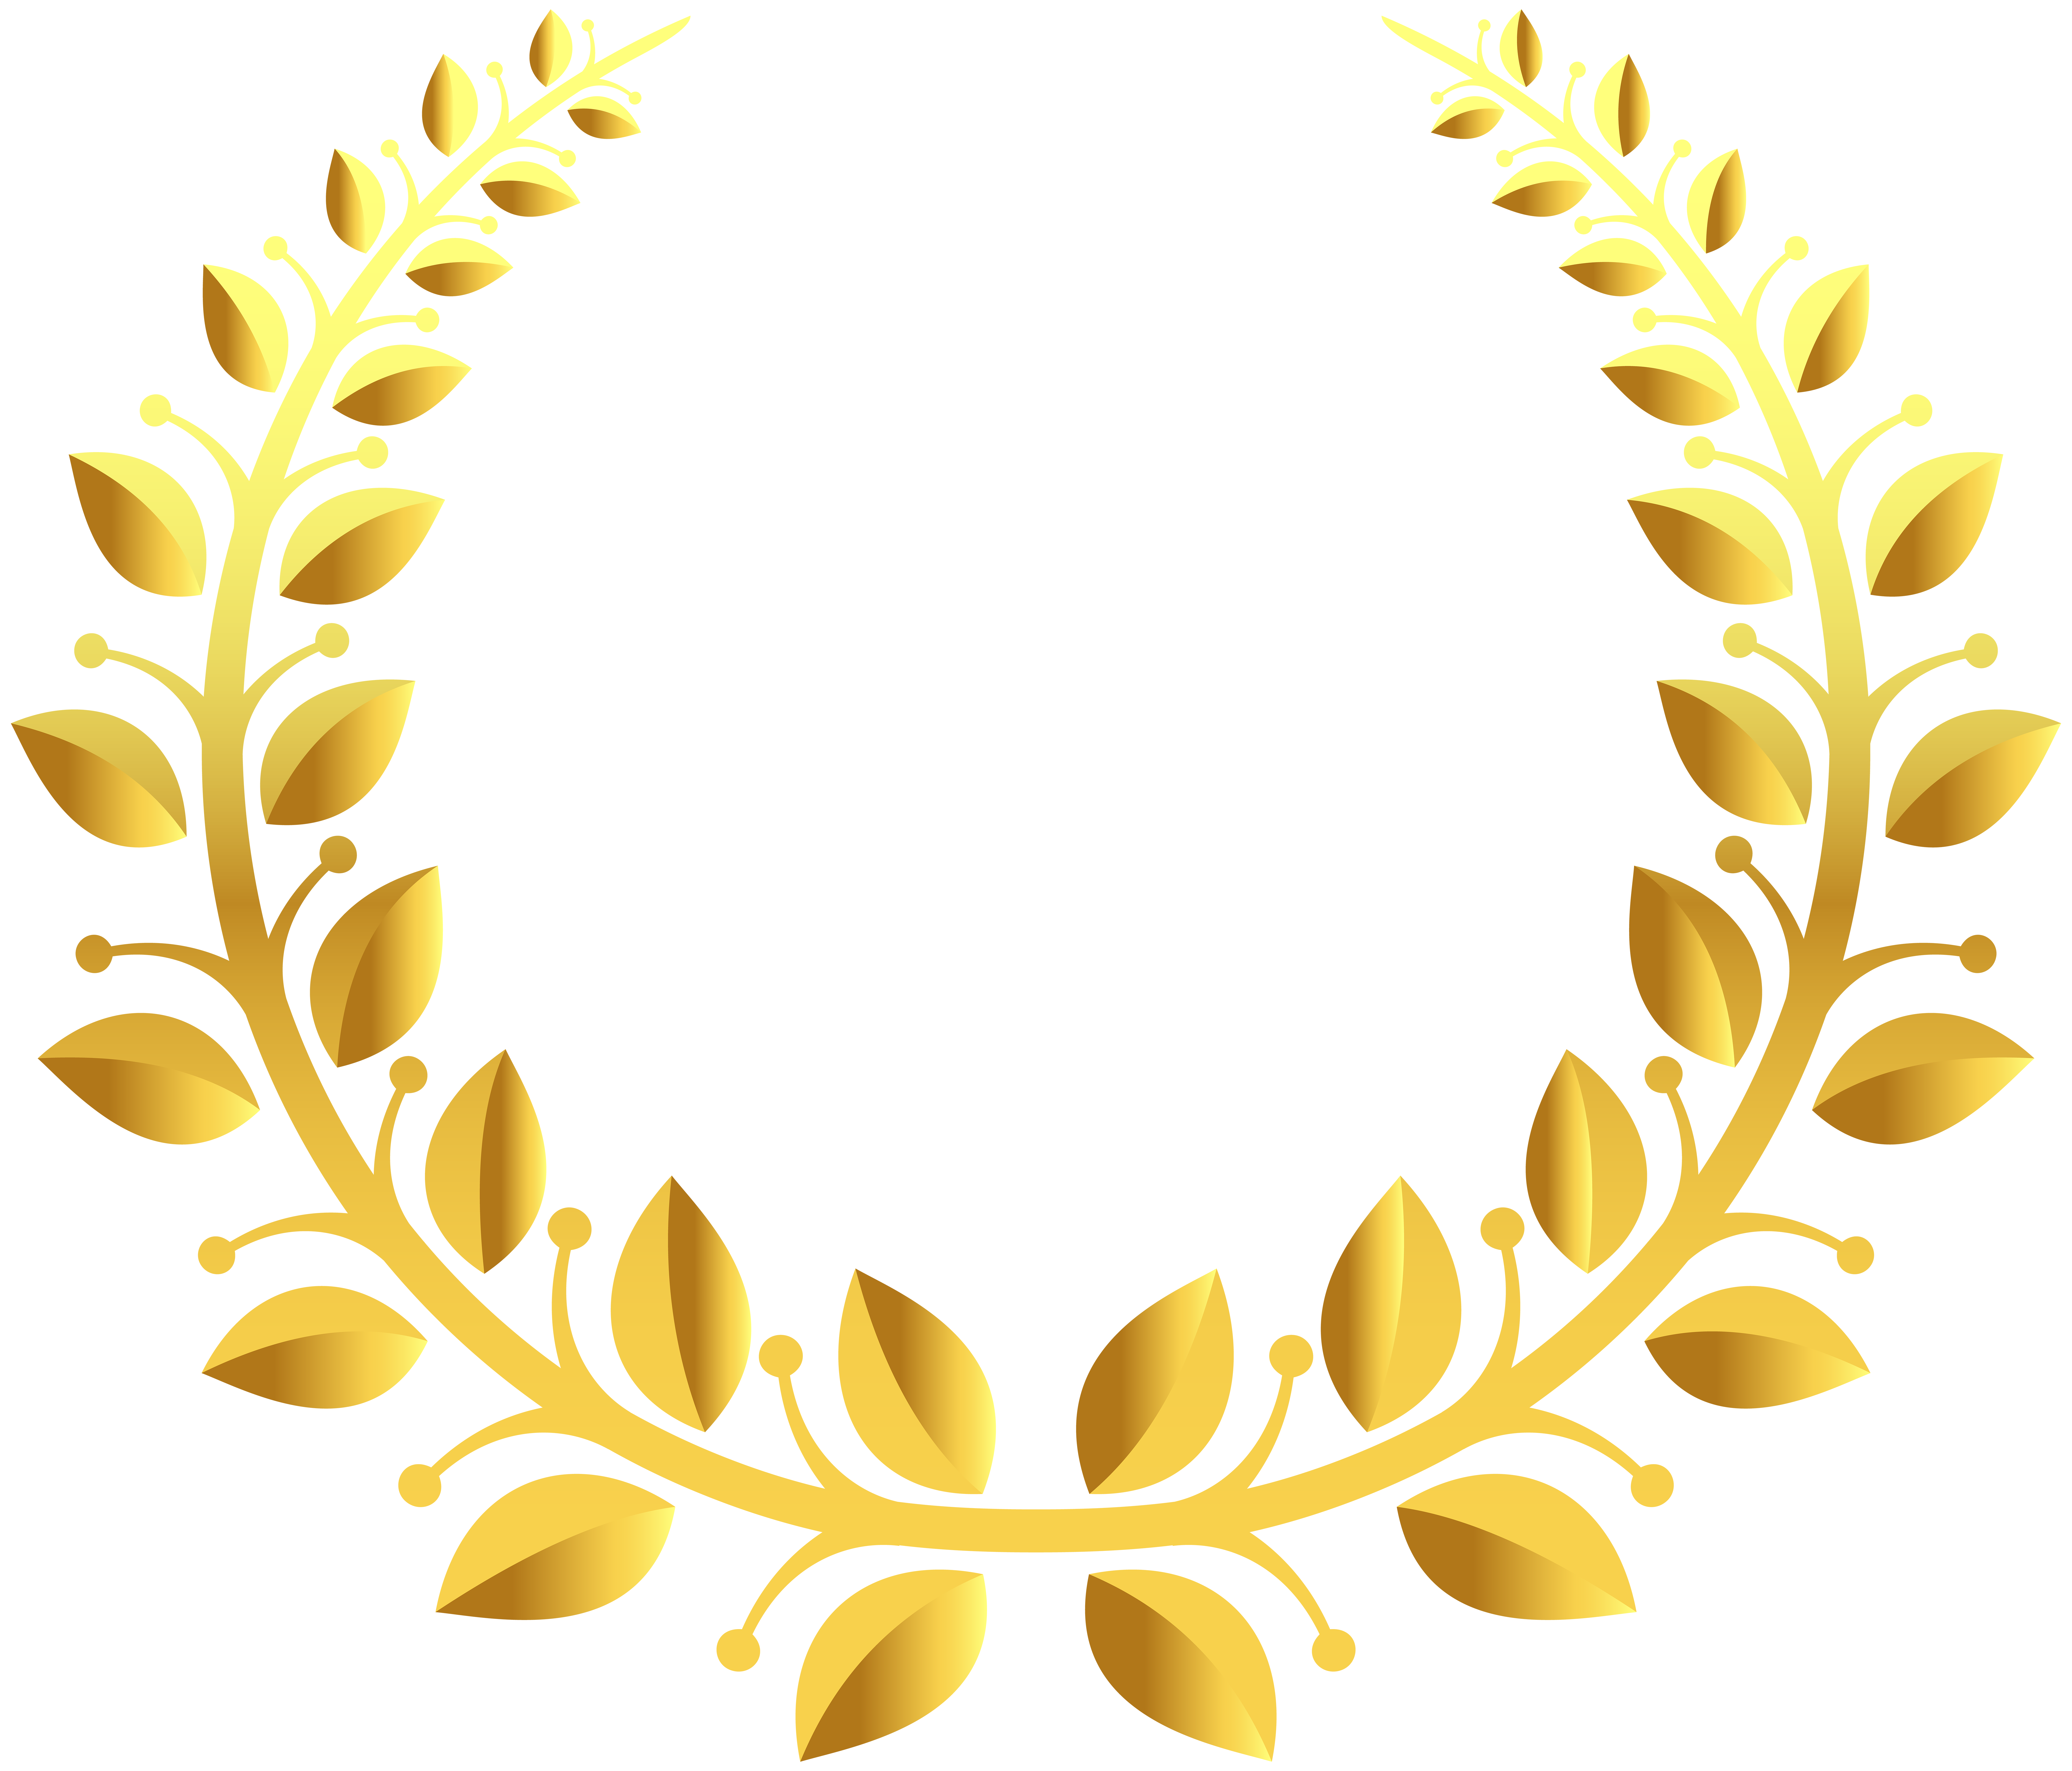 Laurel wreath design.